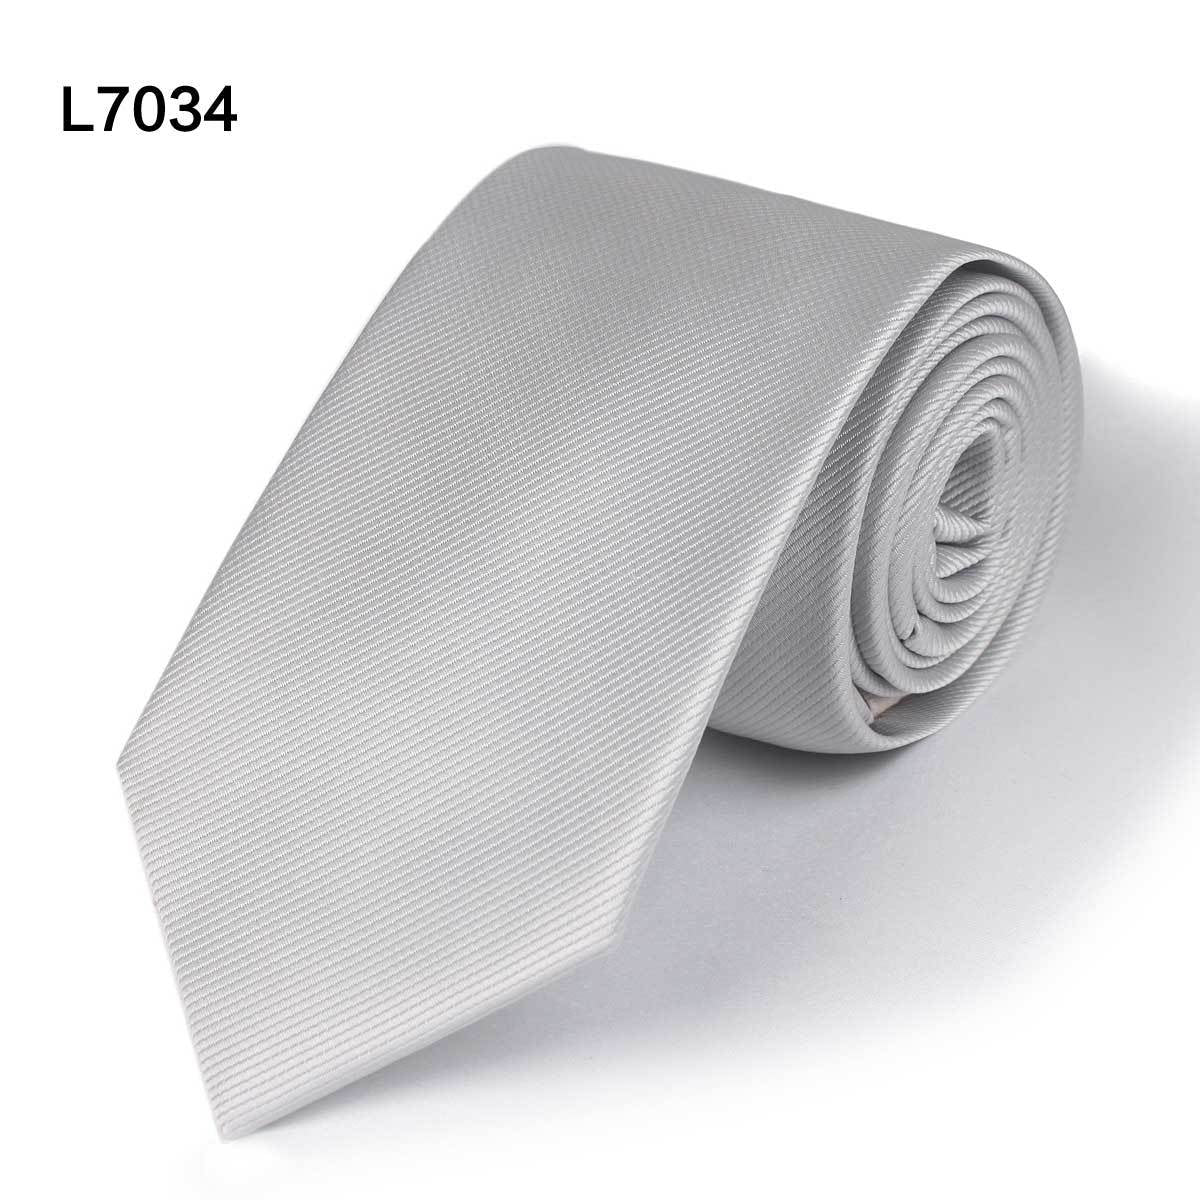 Solid-colour Necktie - Silver, Grey, Black